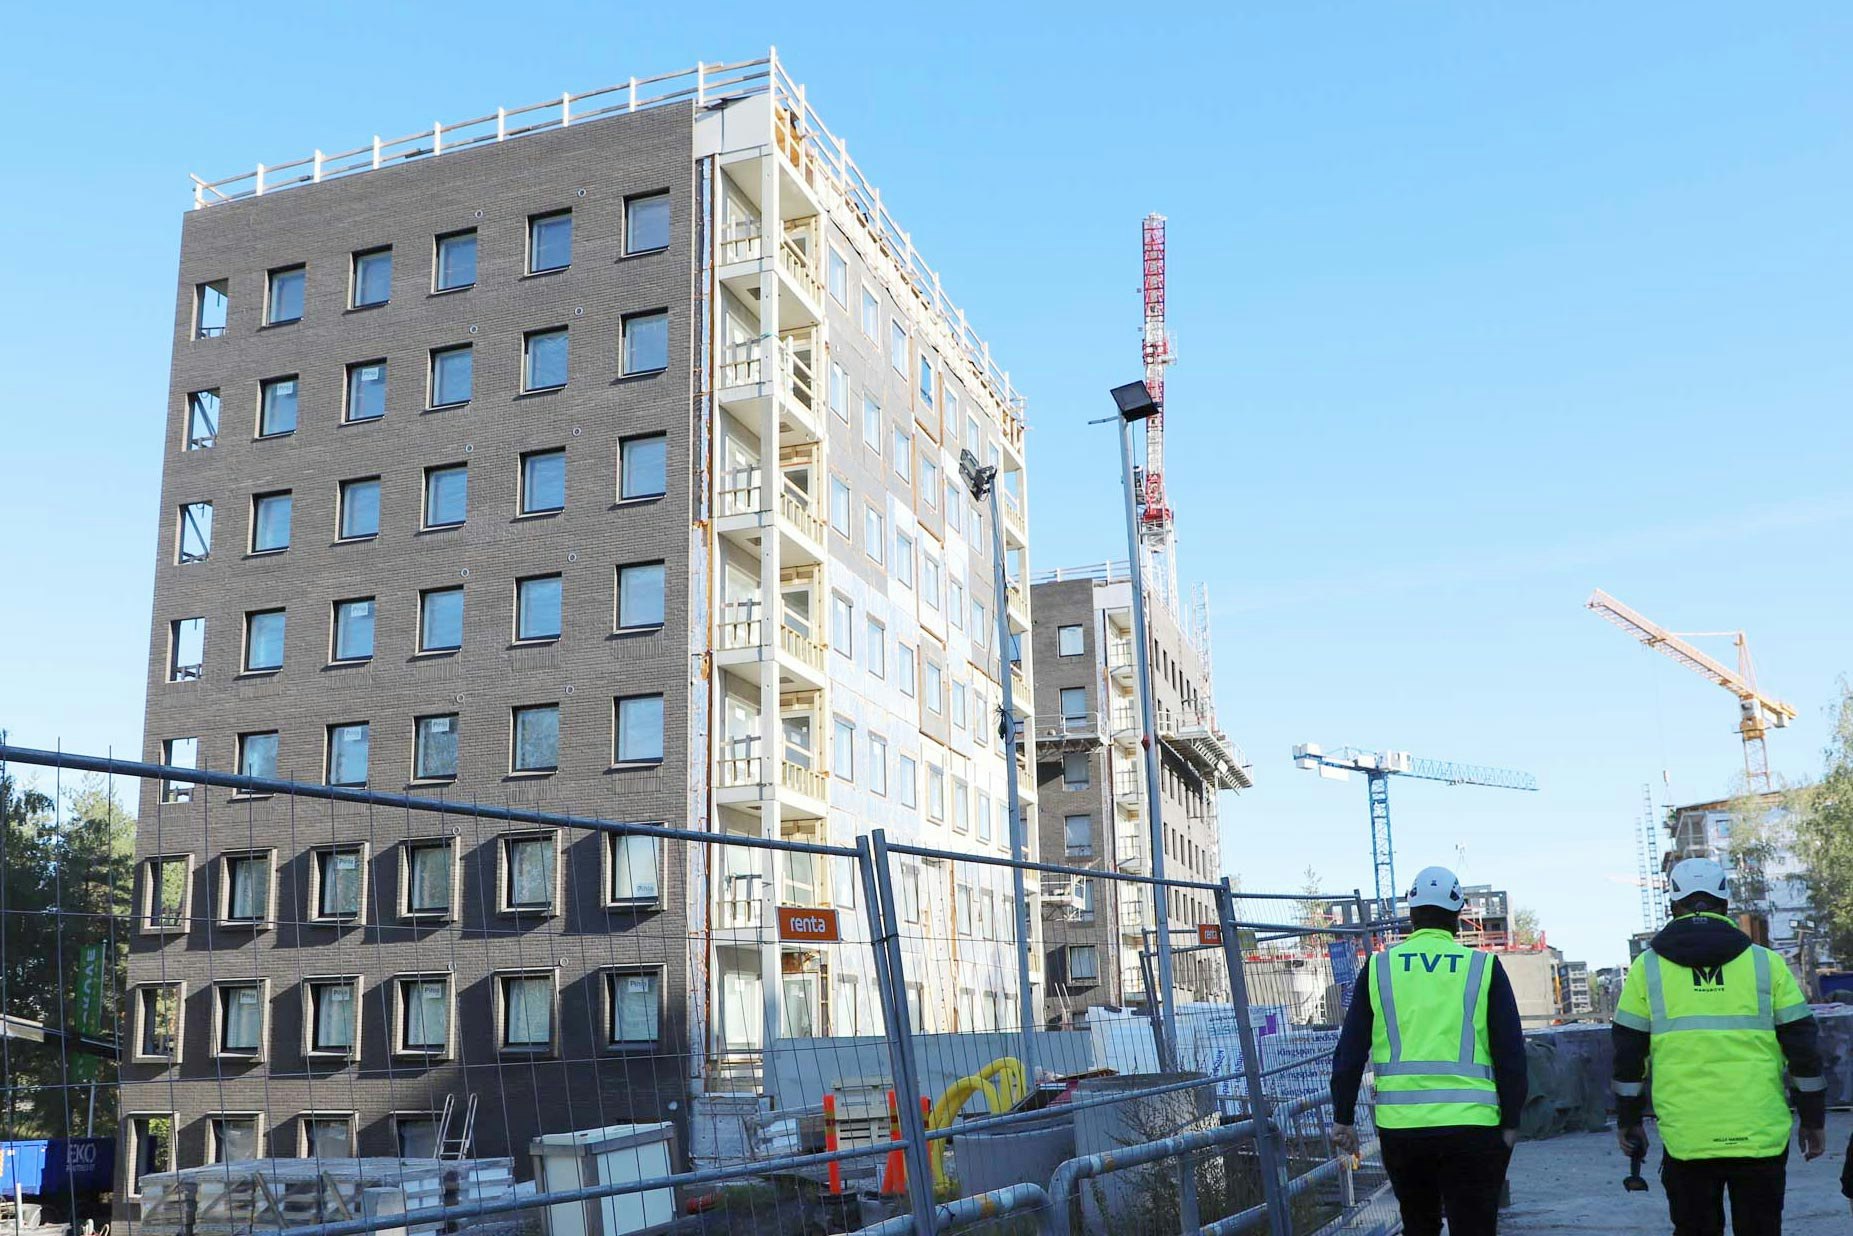 TVT Asunnot rakentaa laadukkaita ja kohtuuhintaisia asuntoja Turun seudulla.